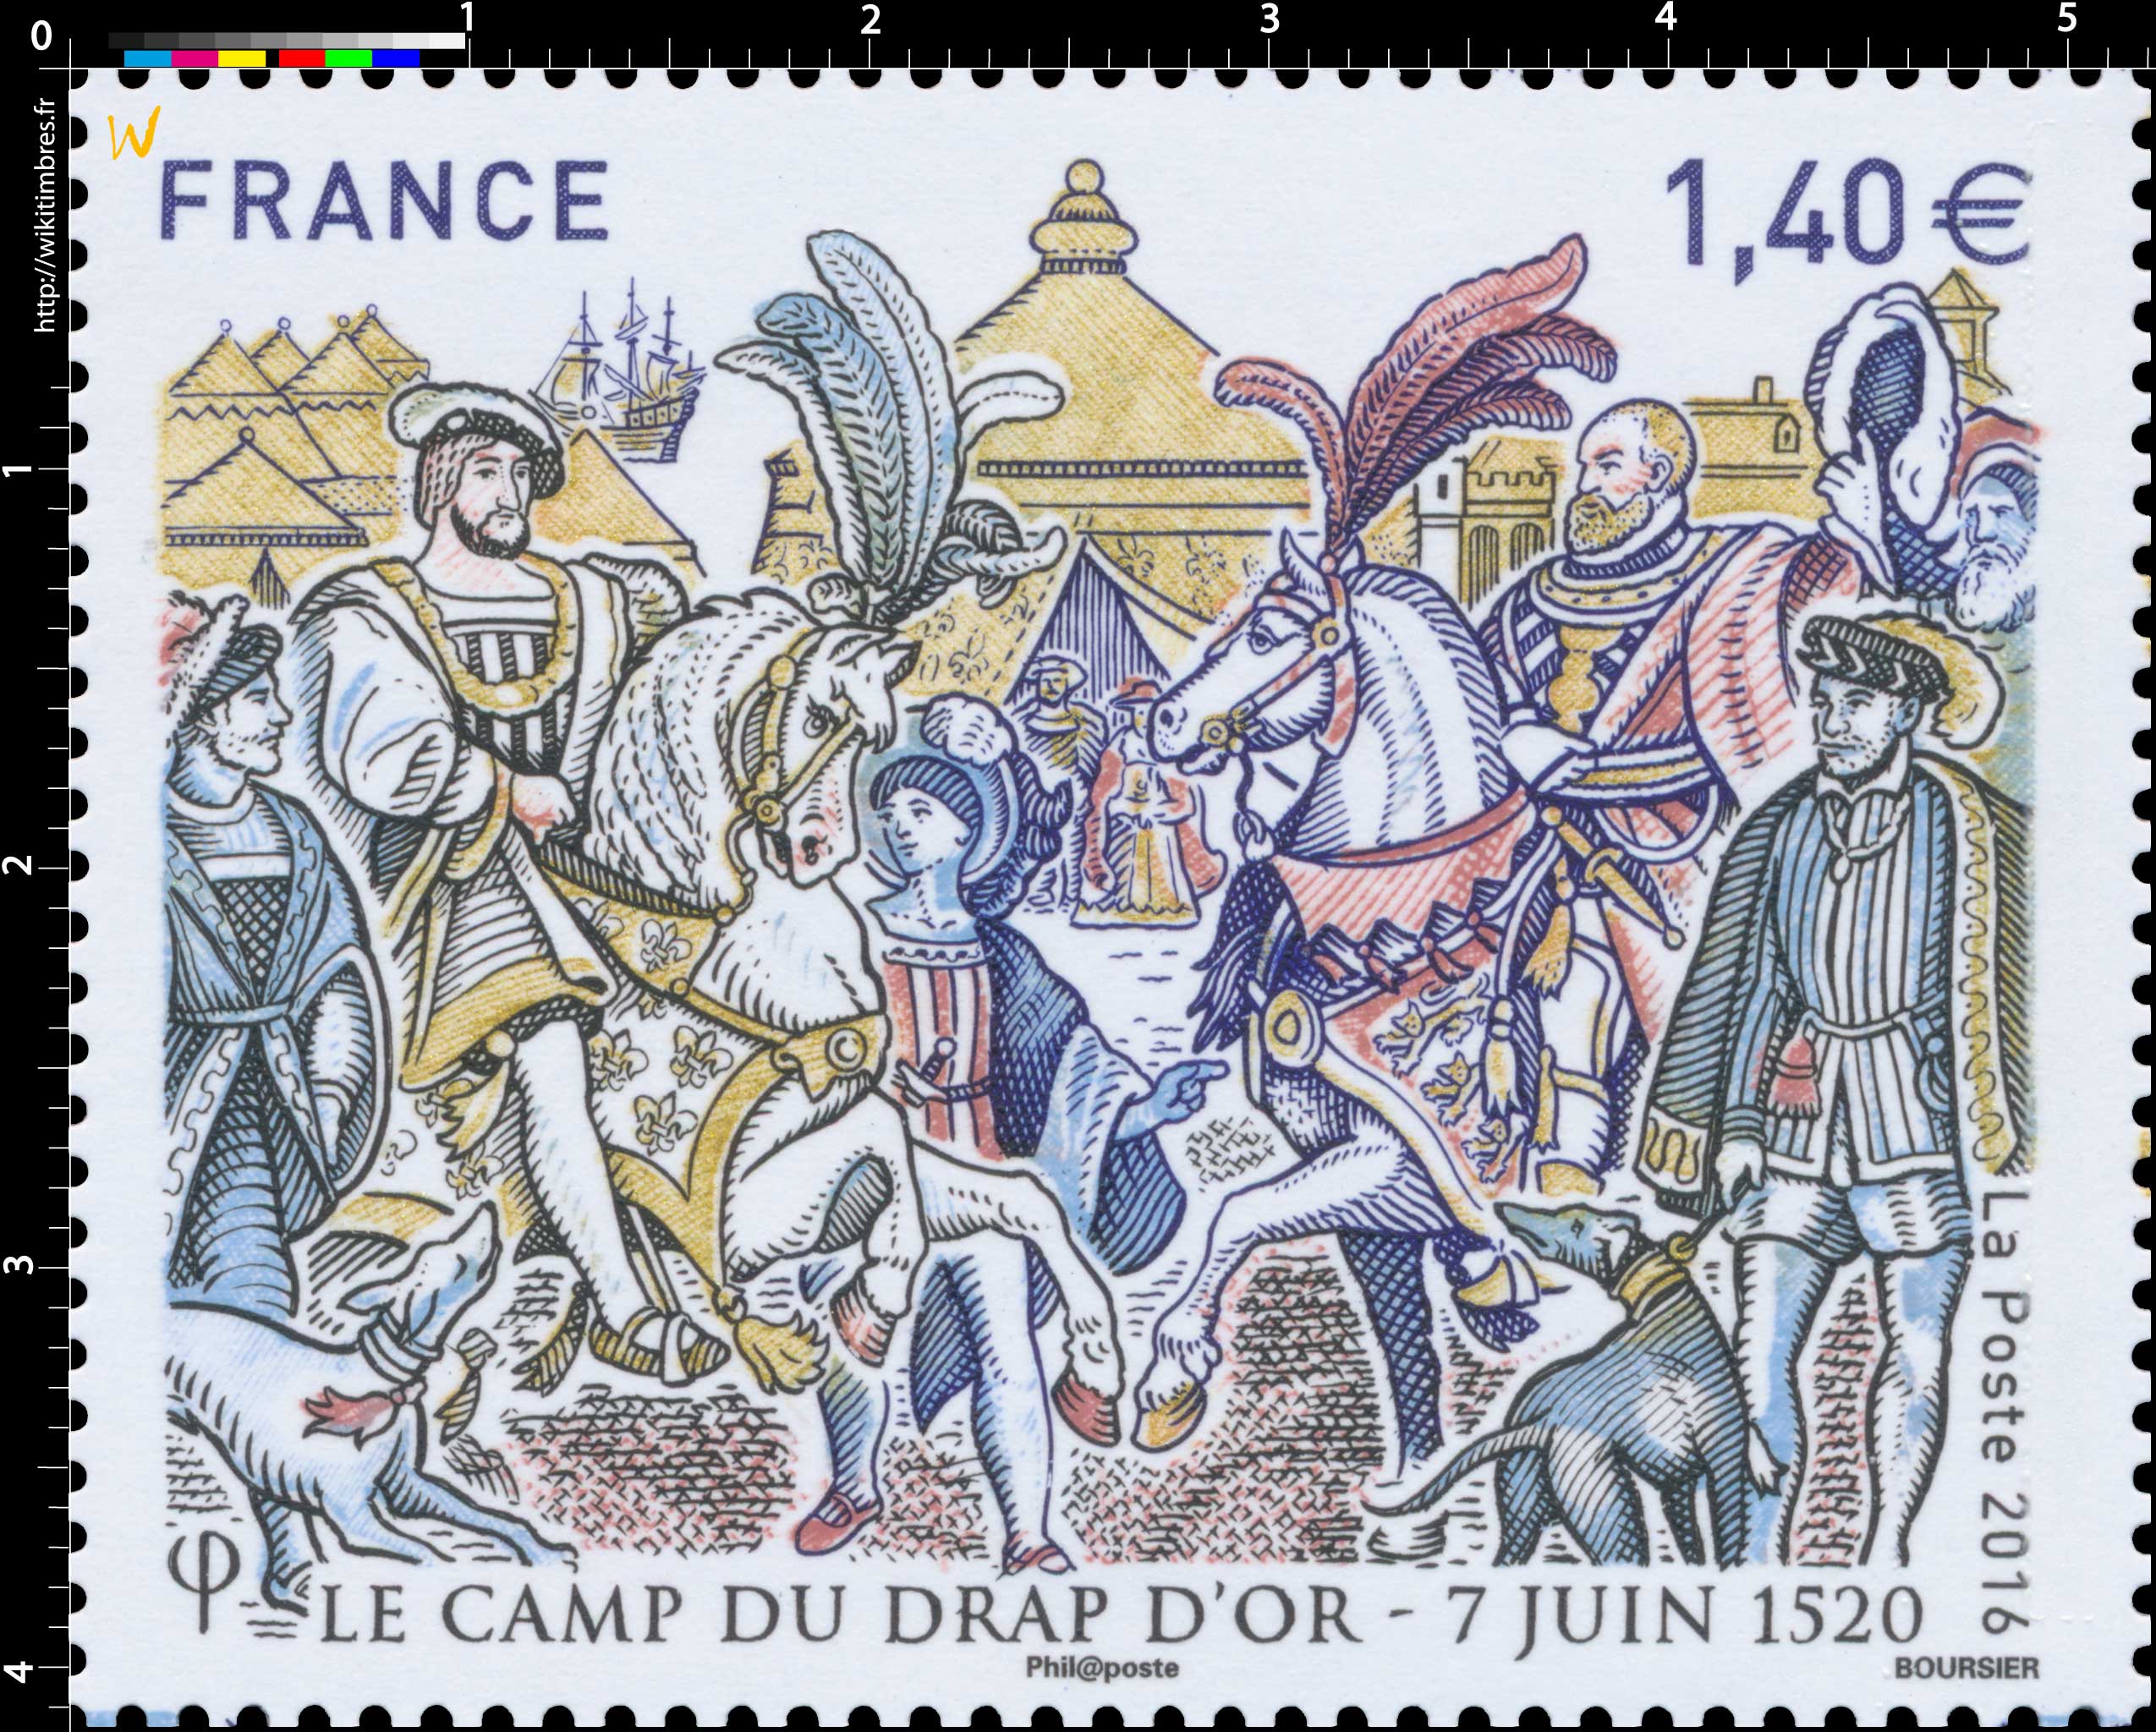 2016 Le camp du drap d'or - 7 juin 1520